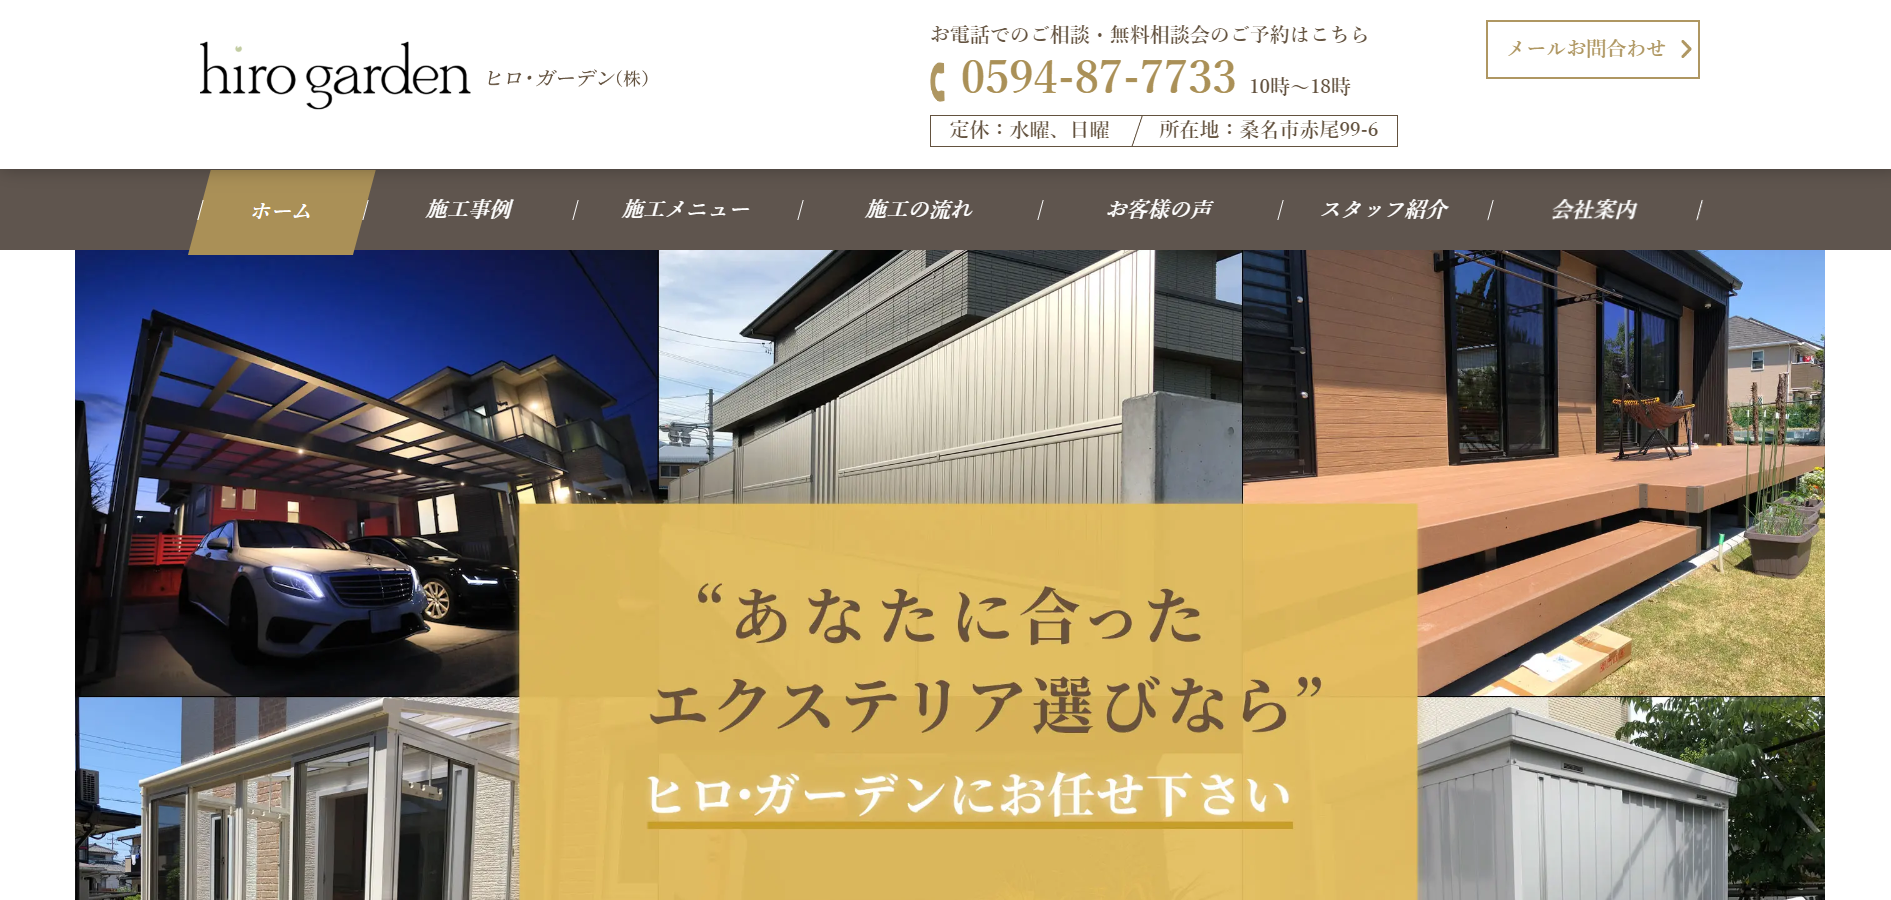 三重県で評判のおすすめ外構業者ランキング 第8位 ヒロ・ガーデン株式会社